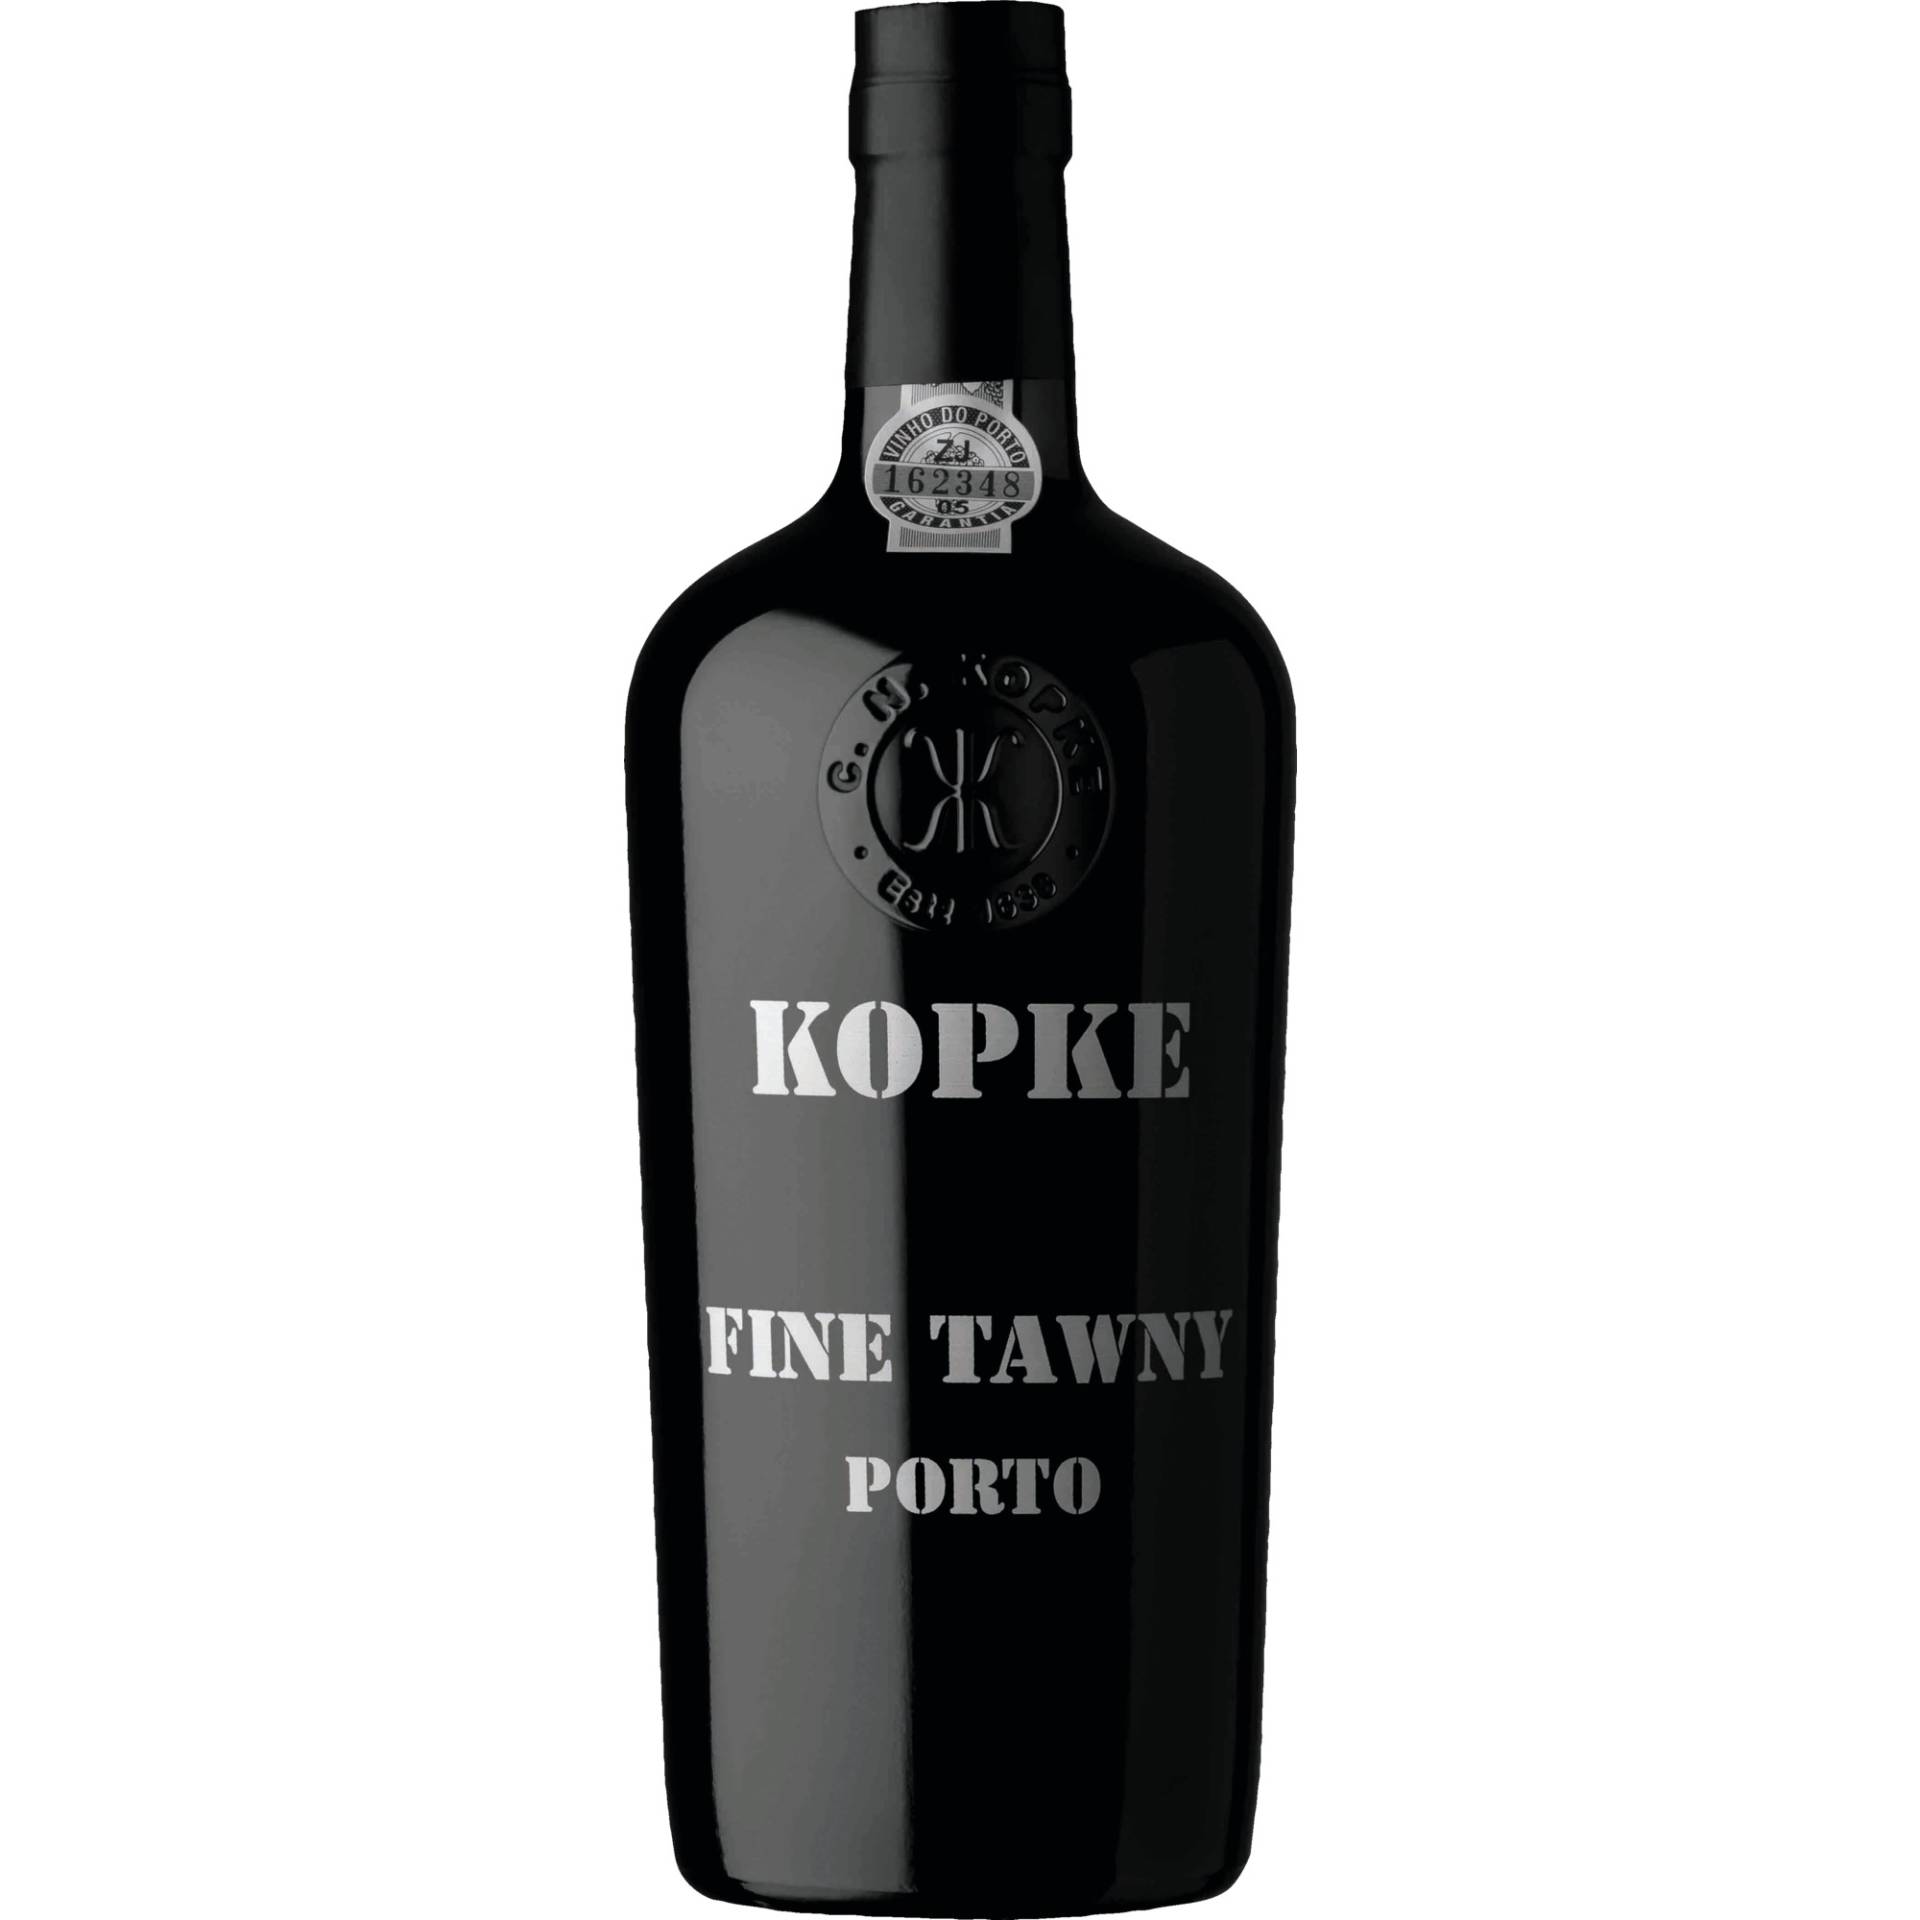 Kopke Fine Tawny Port, Vinho do Porto DOC, 0,75 L, 19,5% Vol., Douro, Spirituosen von Abgefüllt von Sogevinus Fine Wines, S.A., Vila Nova de Gaia, Portugal